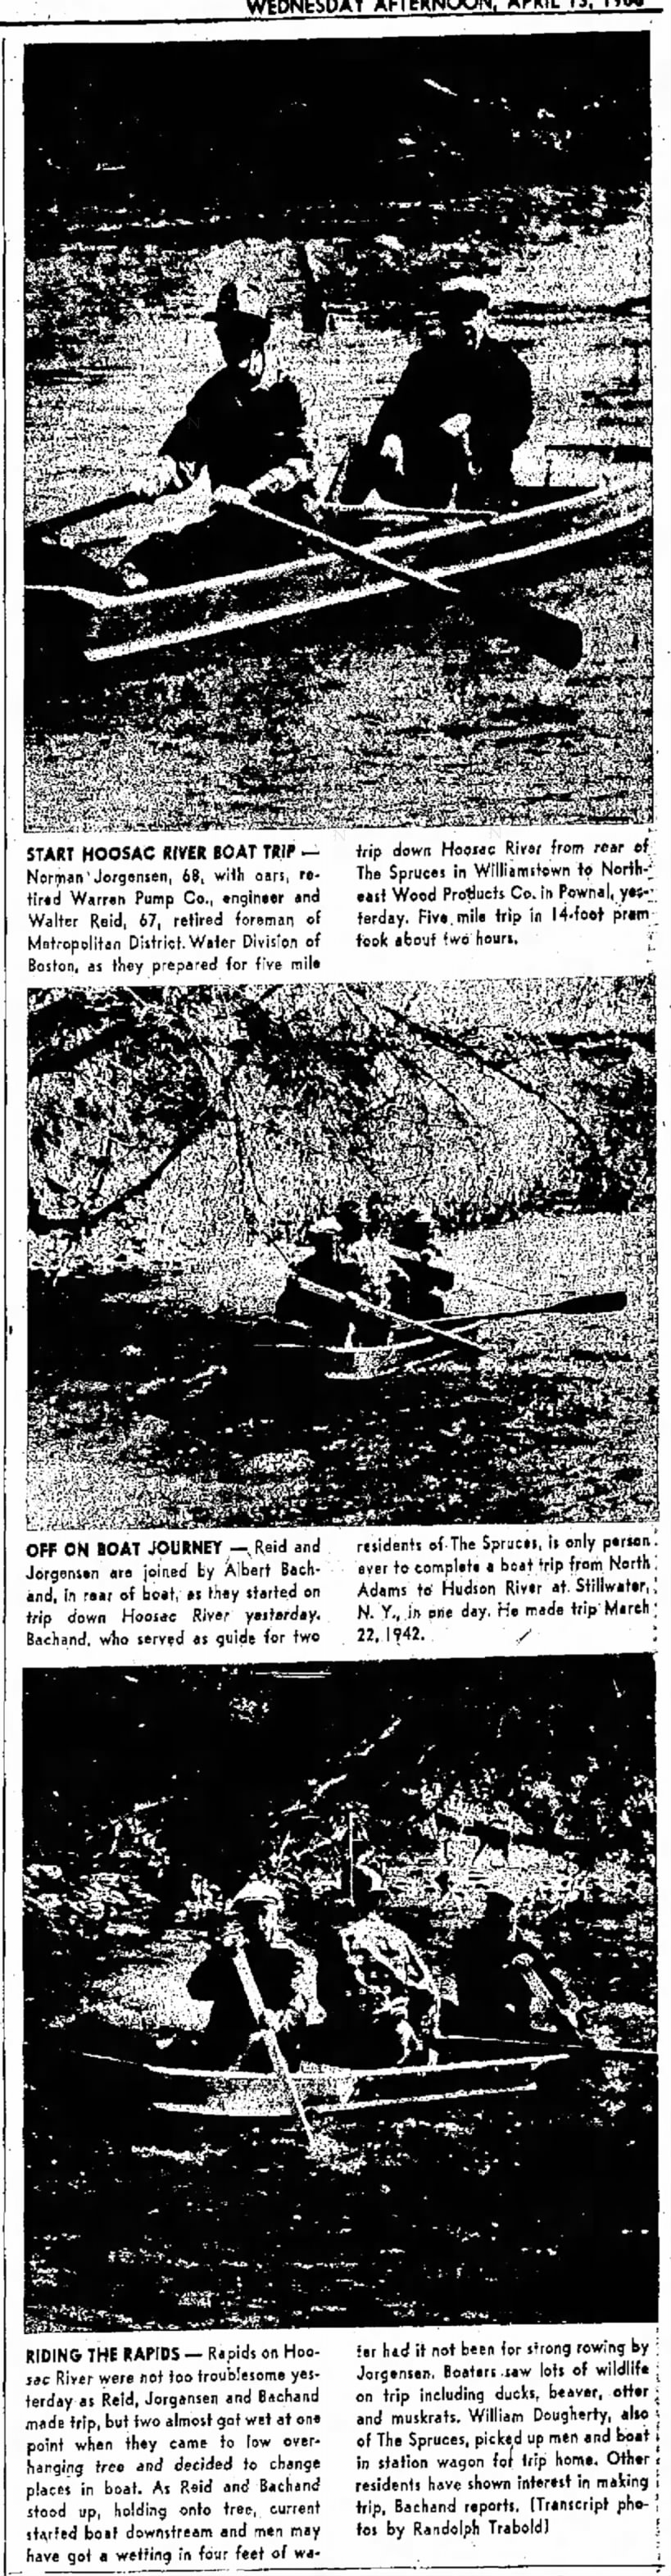 River Boat Trip, Norman A Jorgensen - The North Adams Transcript 13 Apr 1966